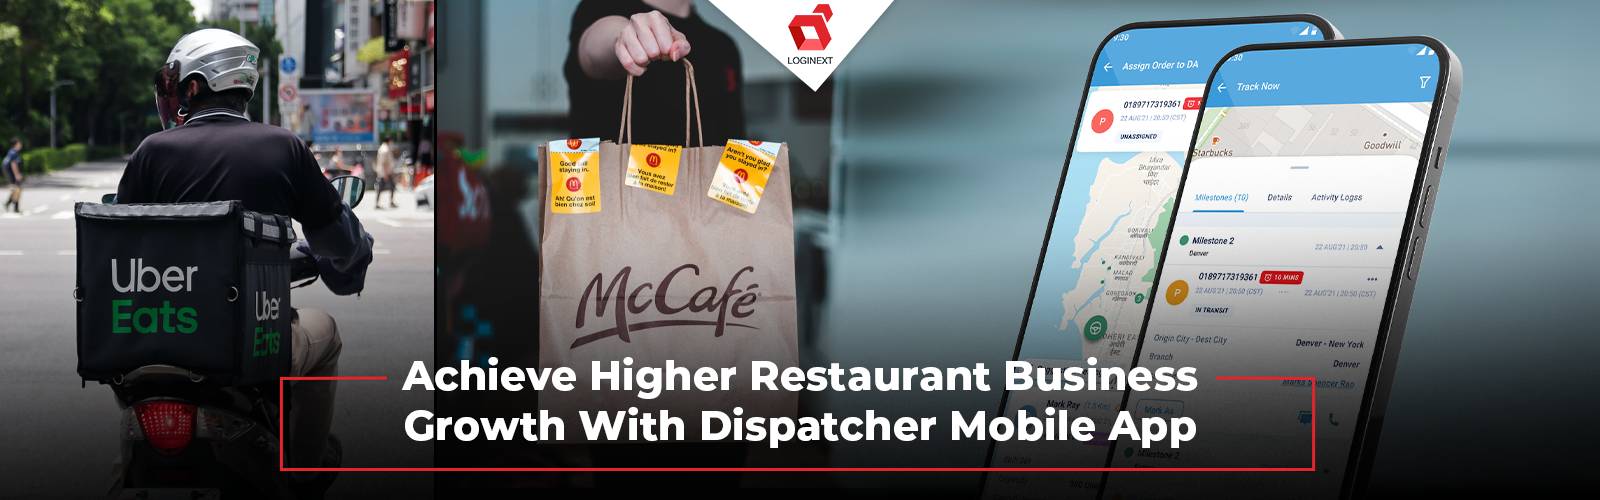 Opnå betydelig vækst i restaurantvirksomhed med Dispatcher Mobile App